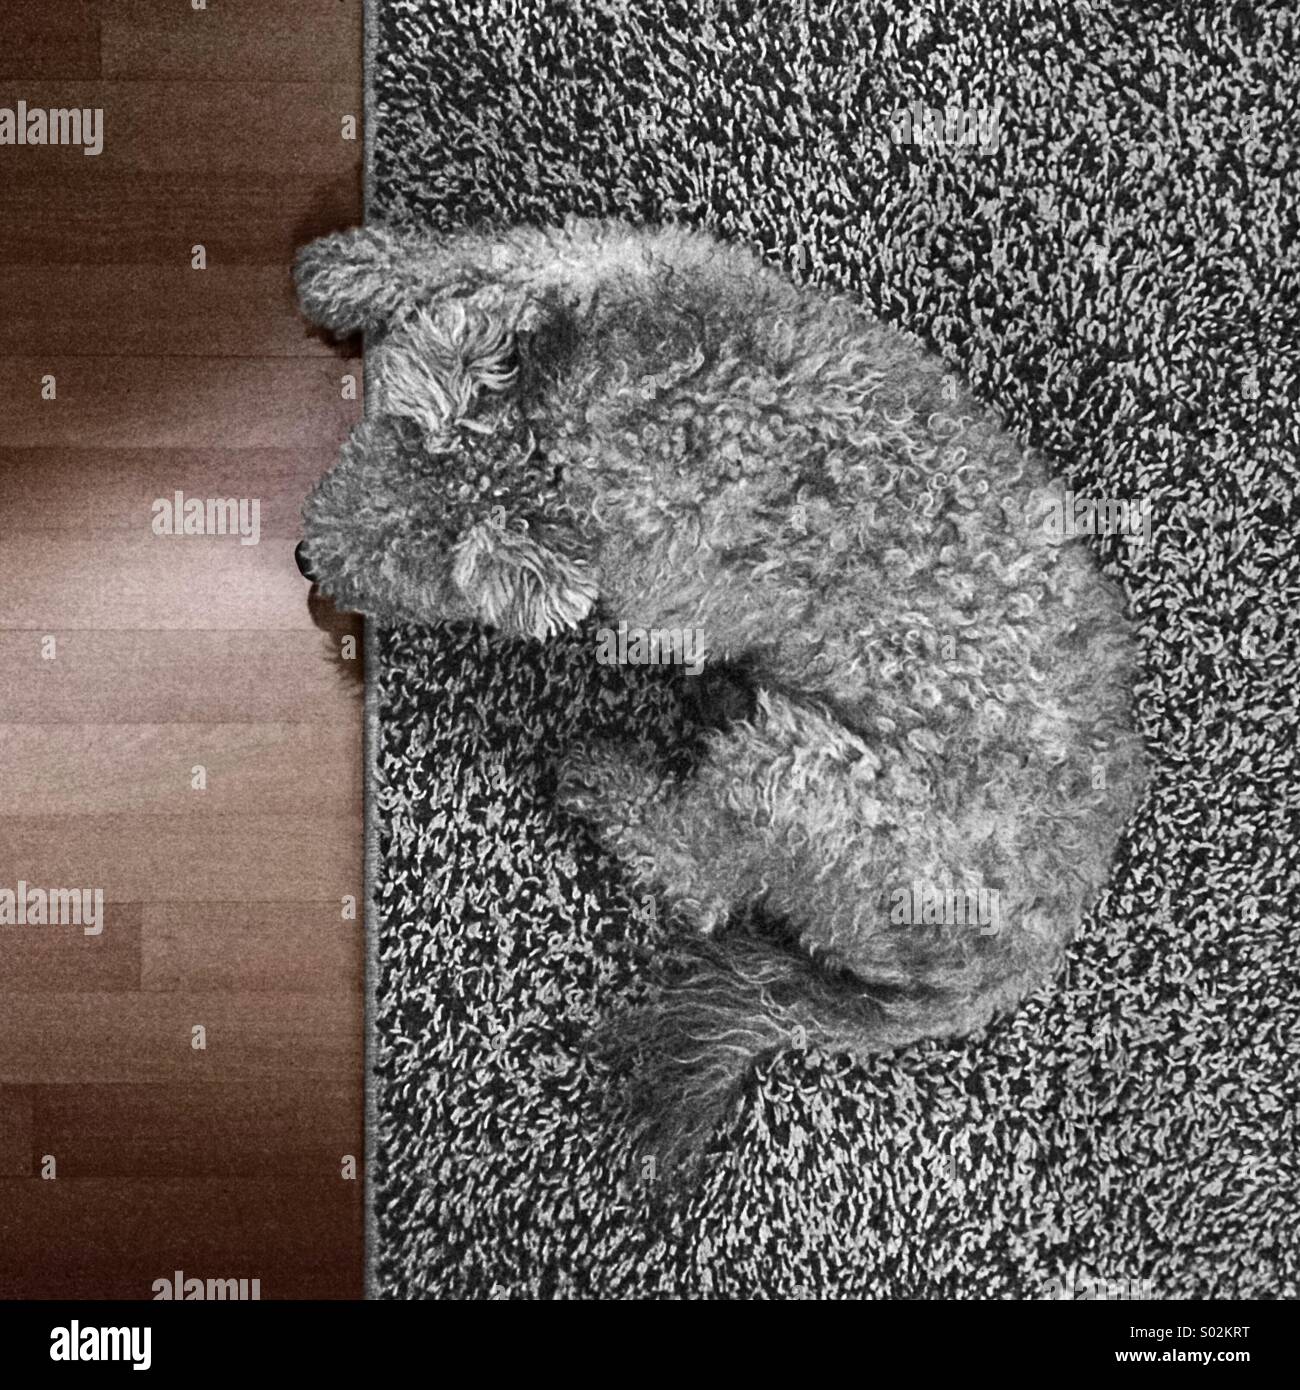 Un perro gris sobre una alfombra de color gris Foto de stock